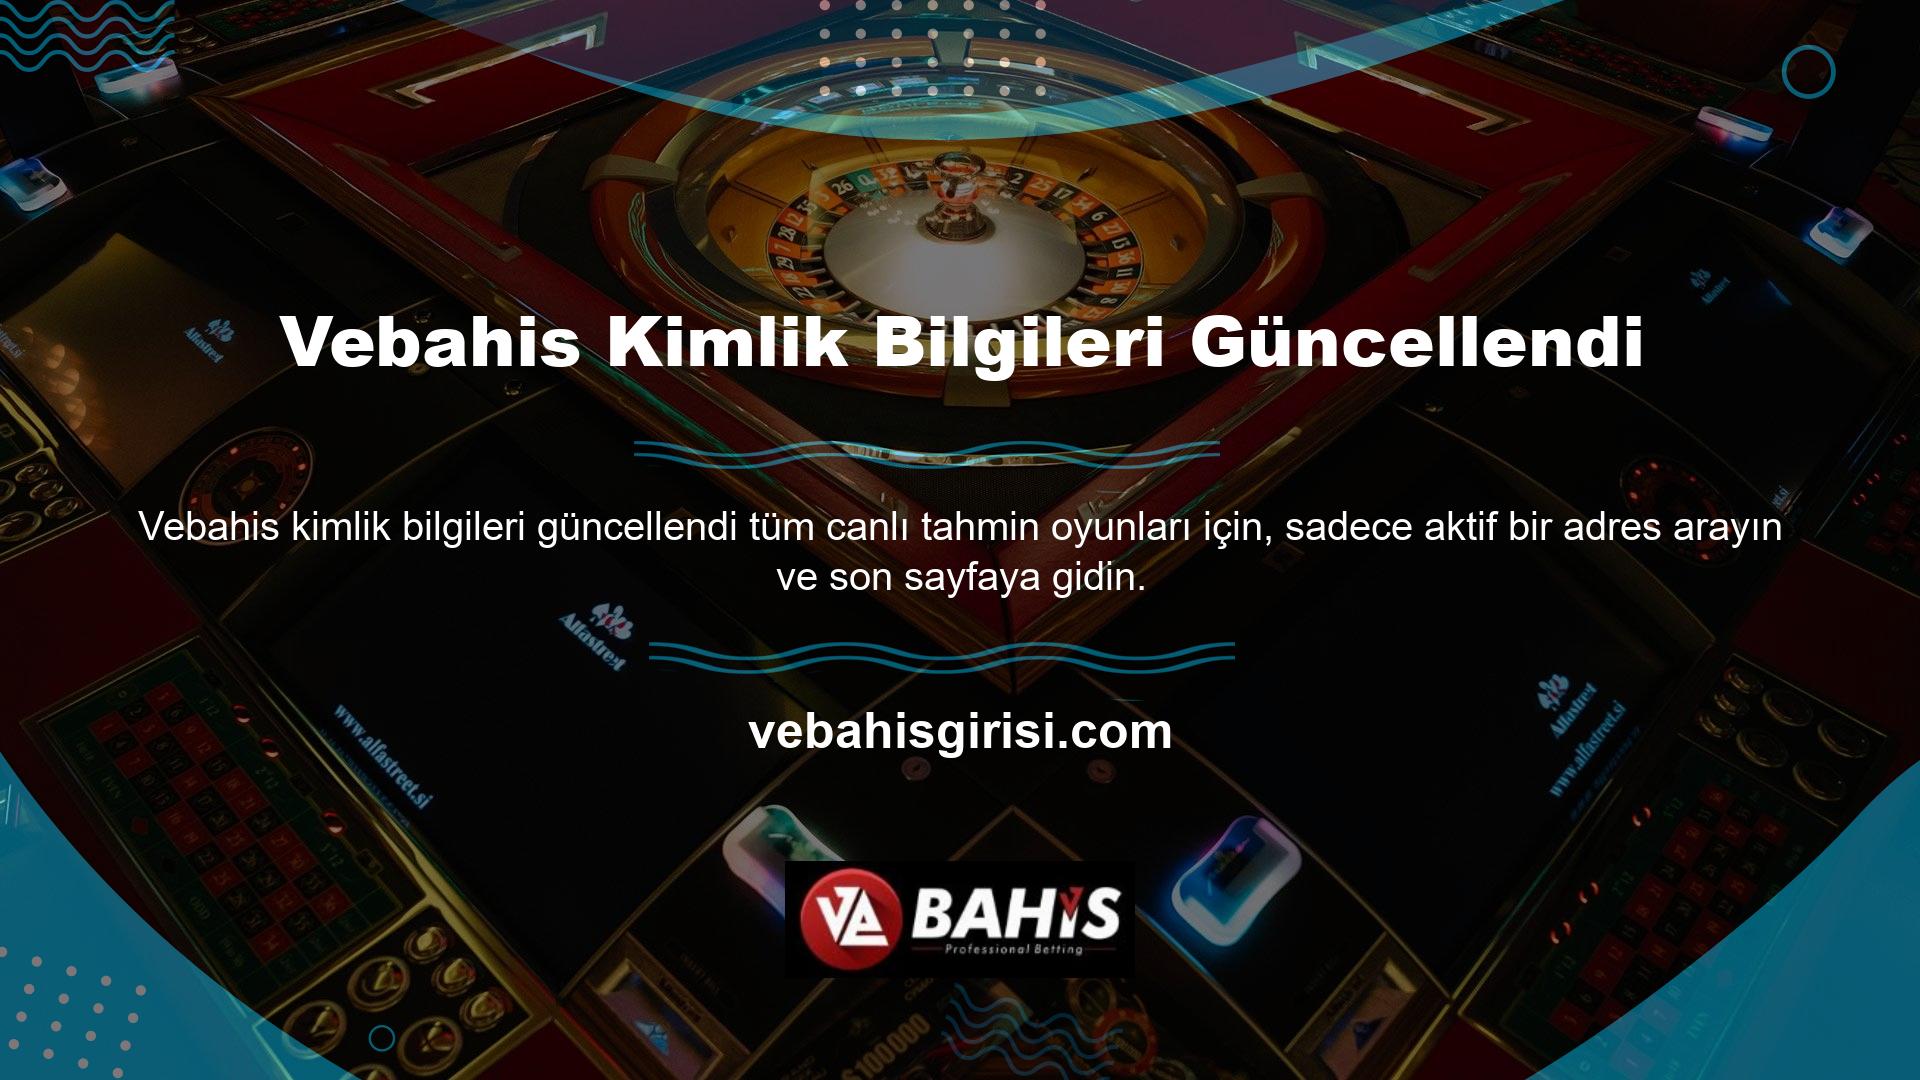 VPN programı ile Türk müşterilerin artık tarayıcılarında güncel Vebahis kimlik bilgilerini aramasına gerek yok